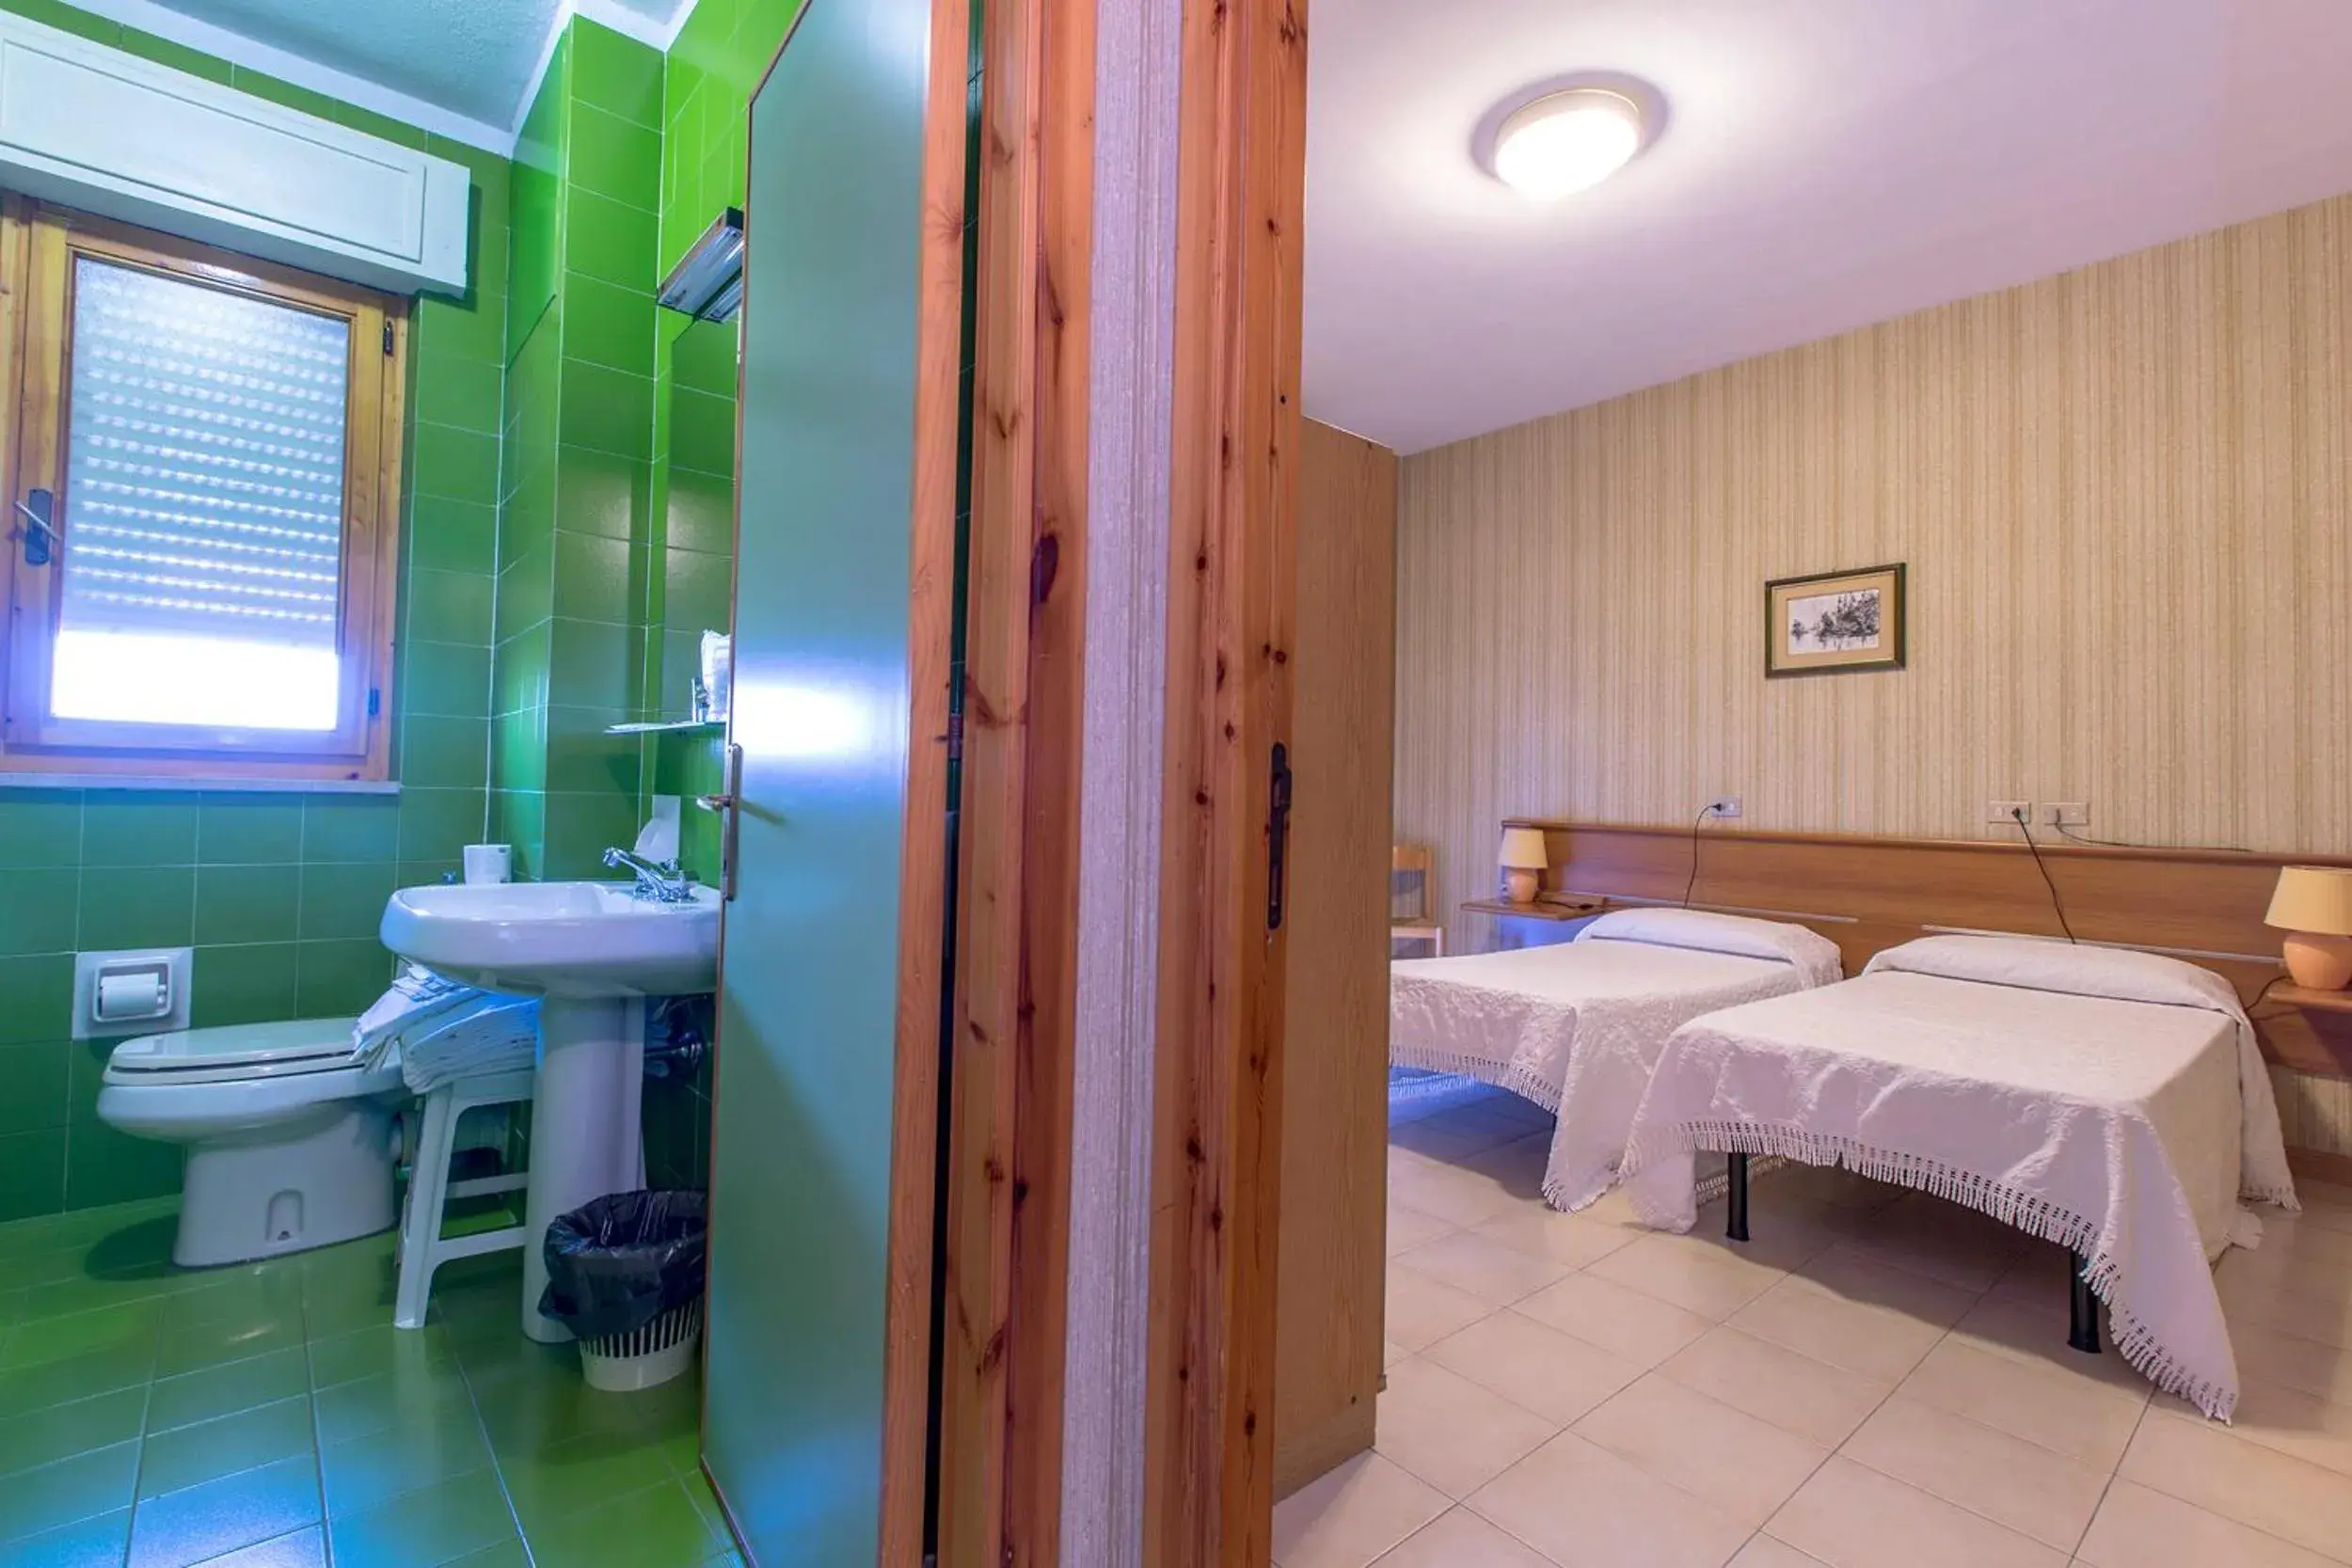 Toilet, Room Photo in Hotel Residence Ulivi E Palme